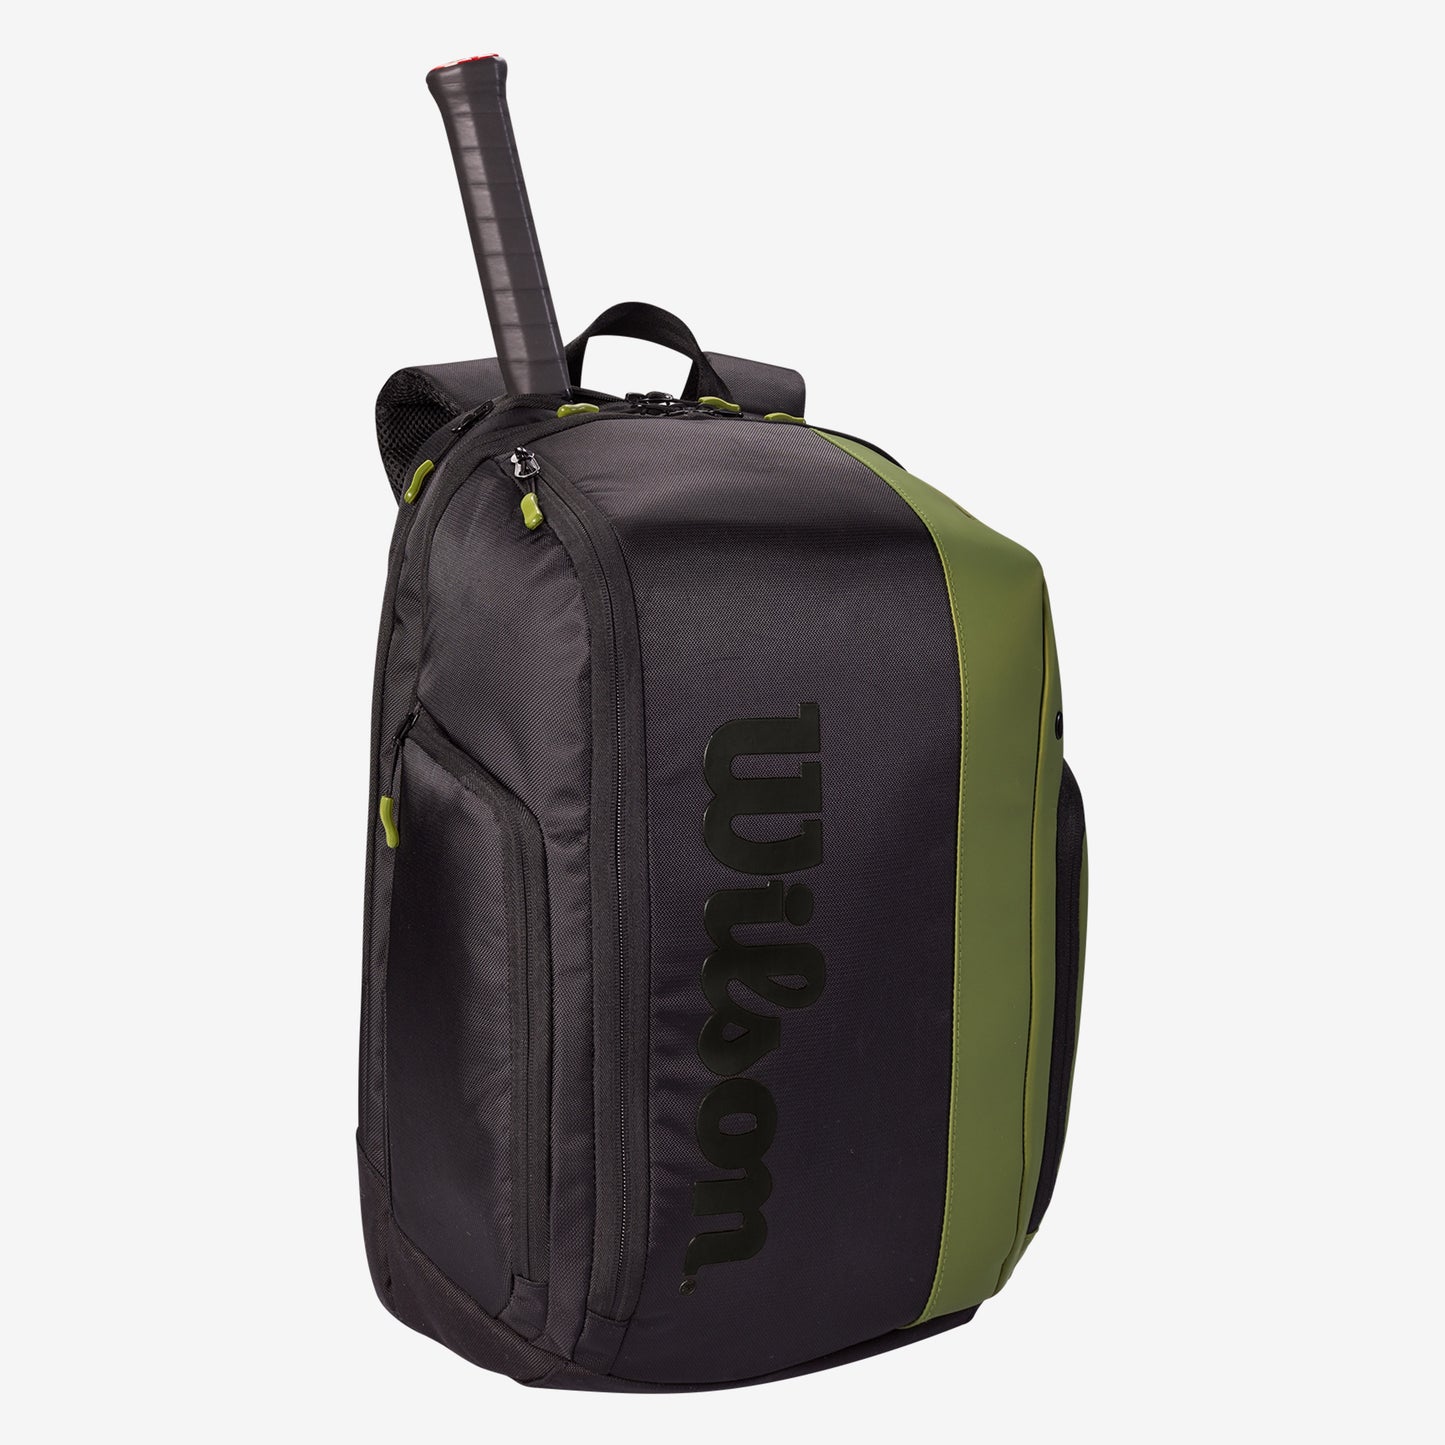 Wilson Super Tour Blade v8 backpack tennis bag